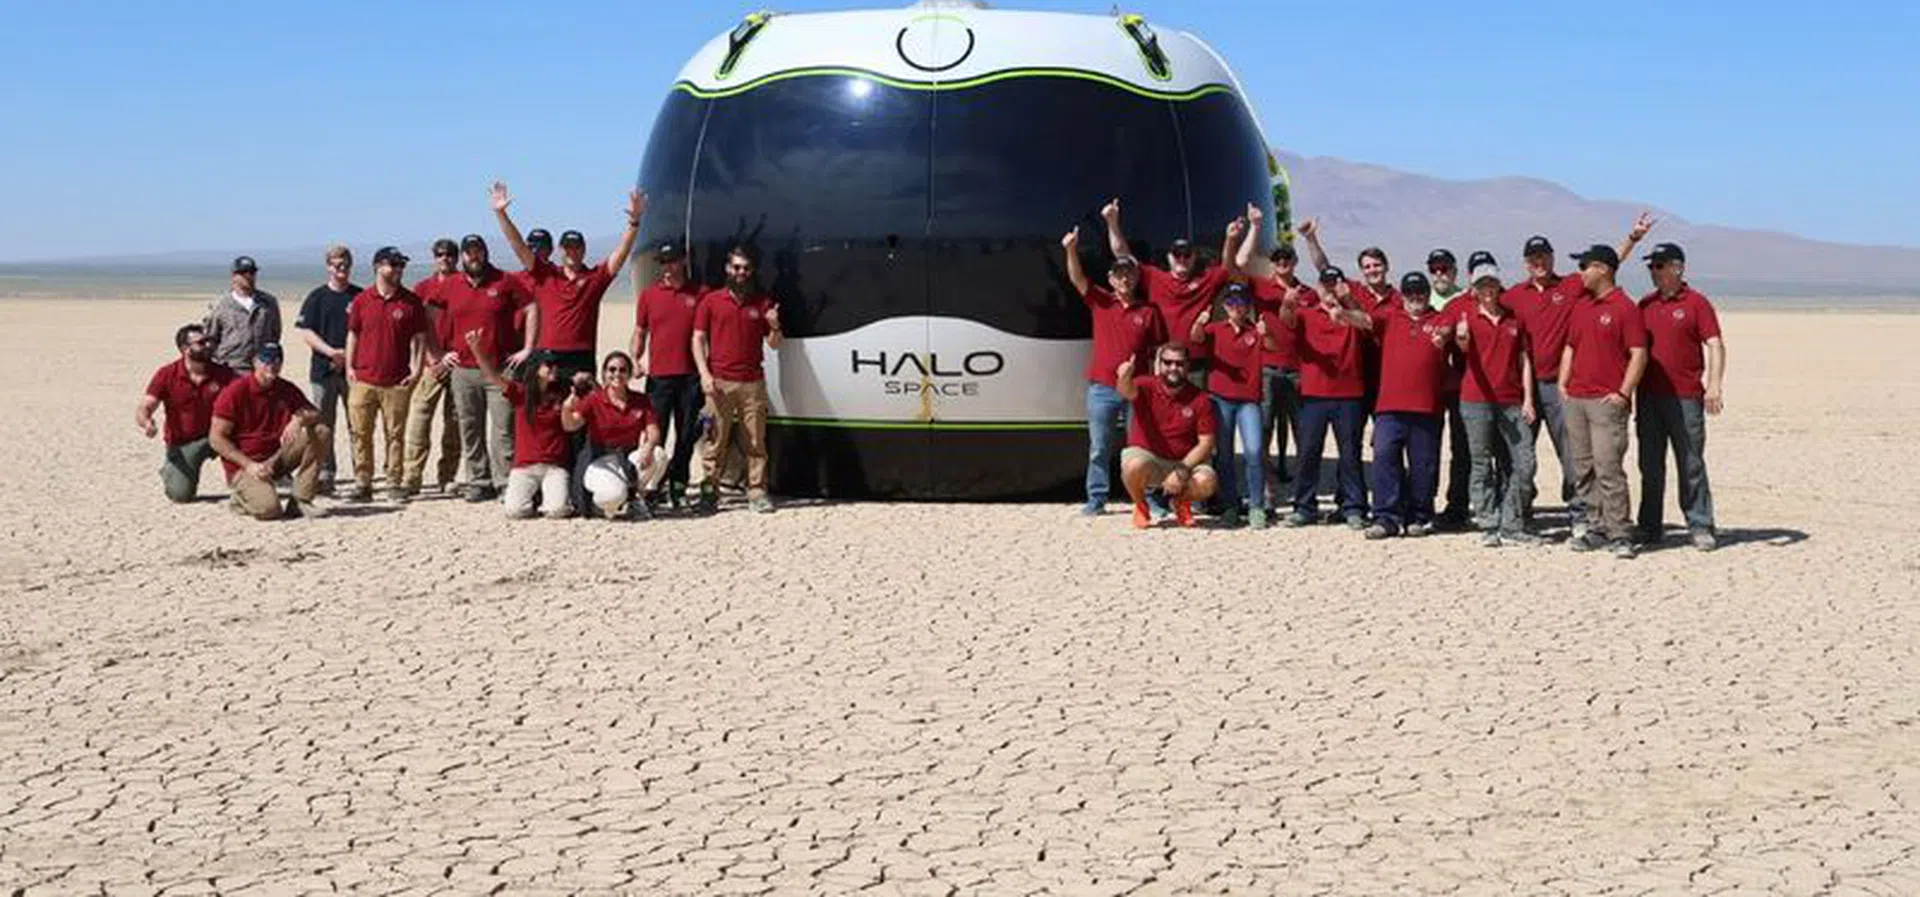 С балон към Космоса е туристическата атракция на бъдещето